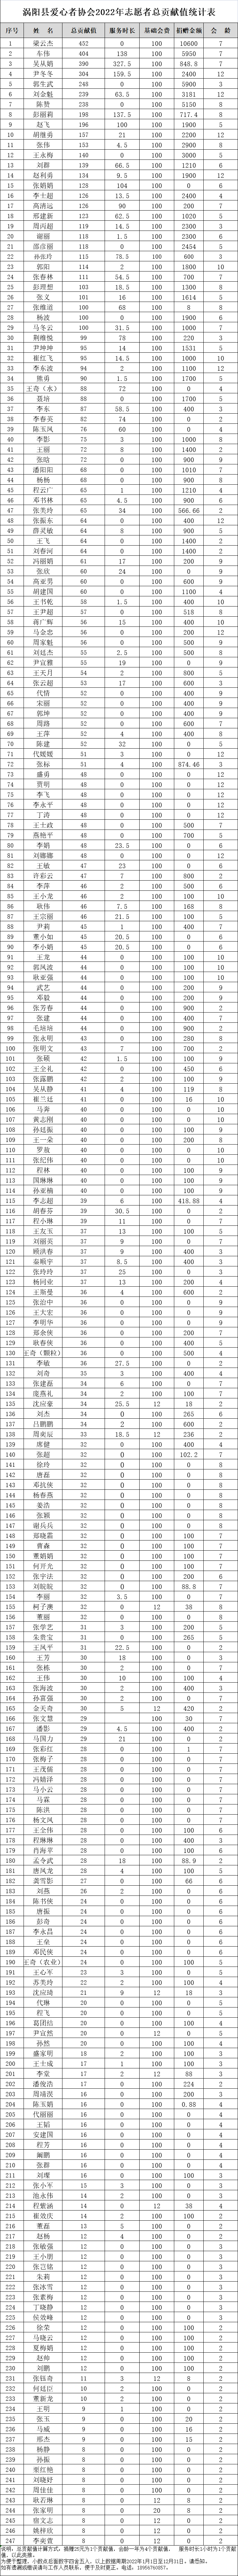 涡阳县爱心者协会2022年志愿者总贡献值统计表.png